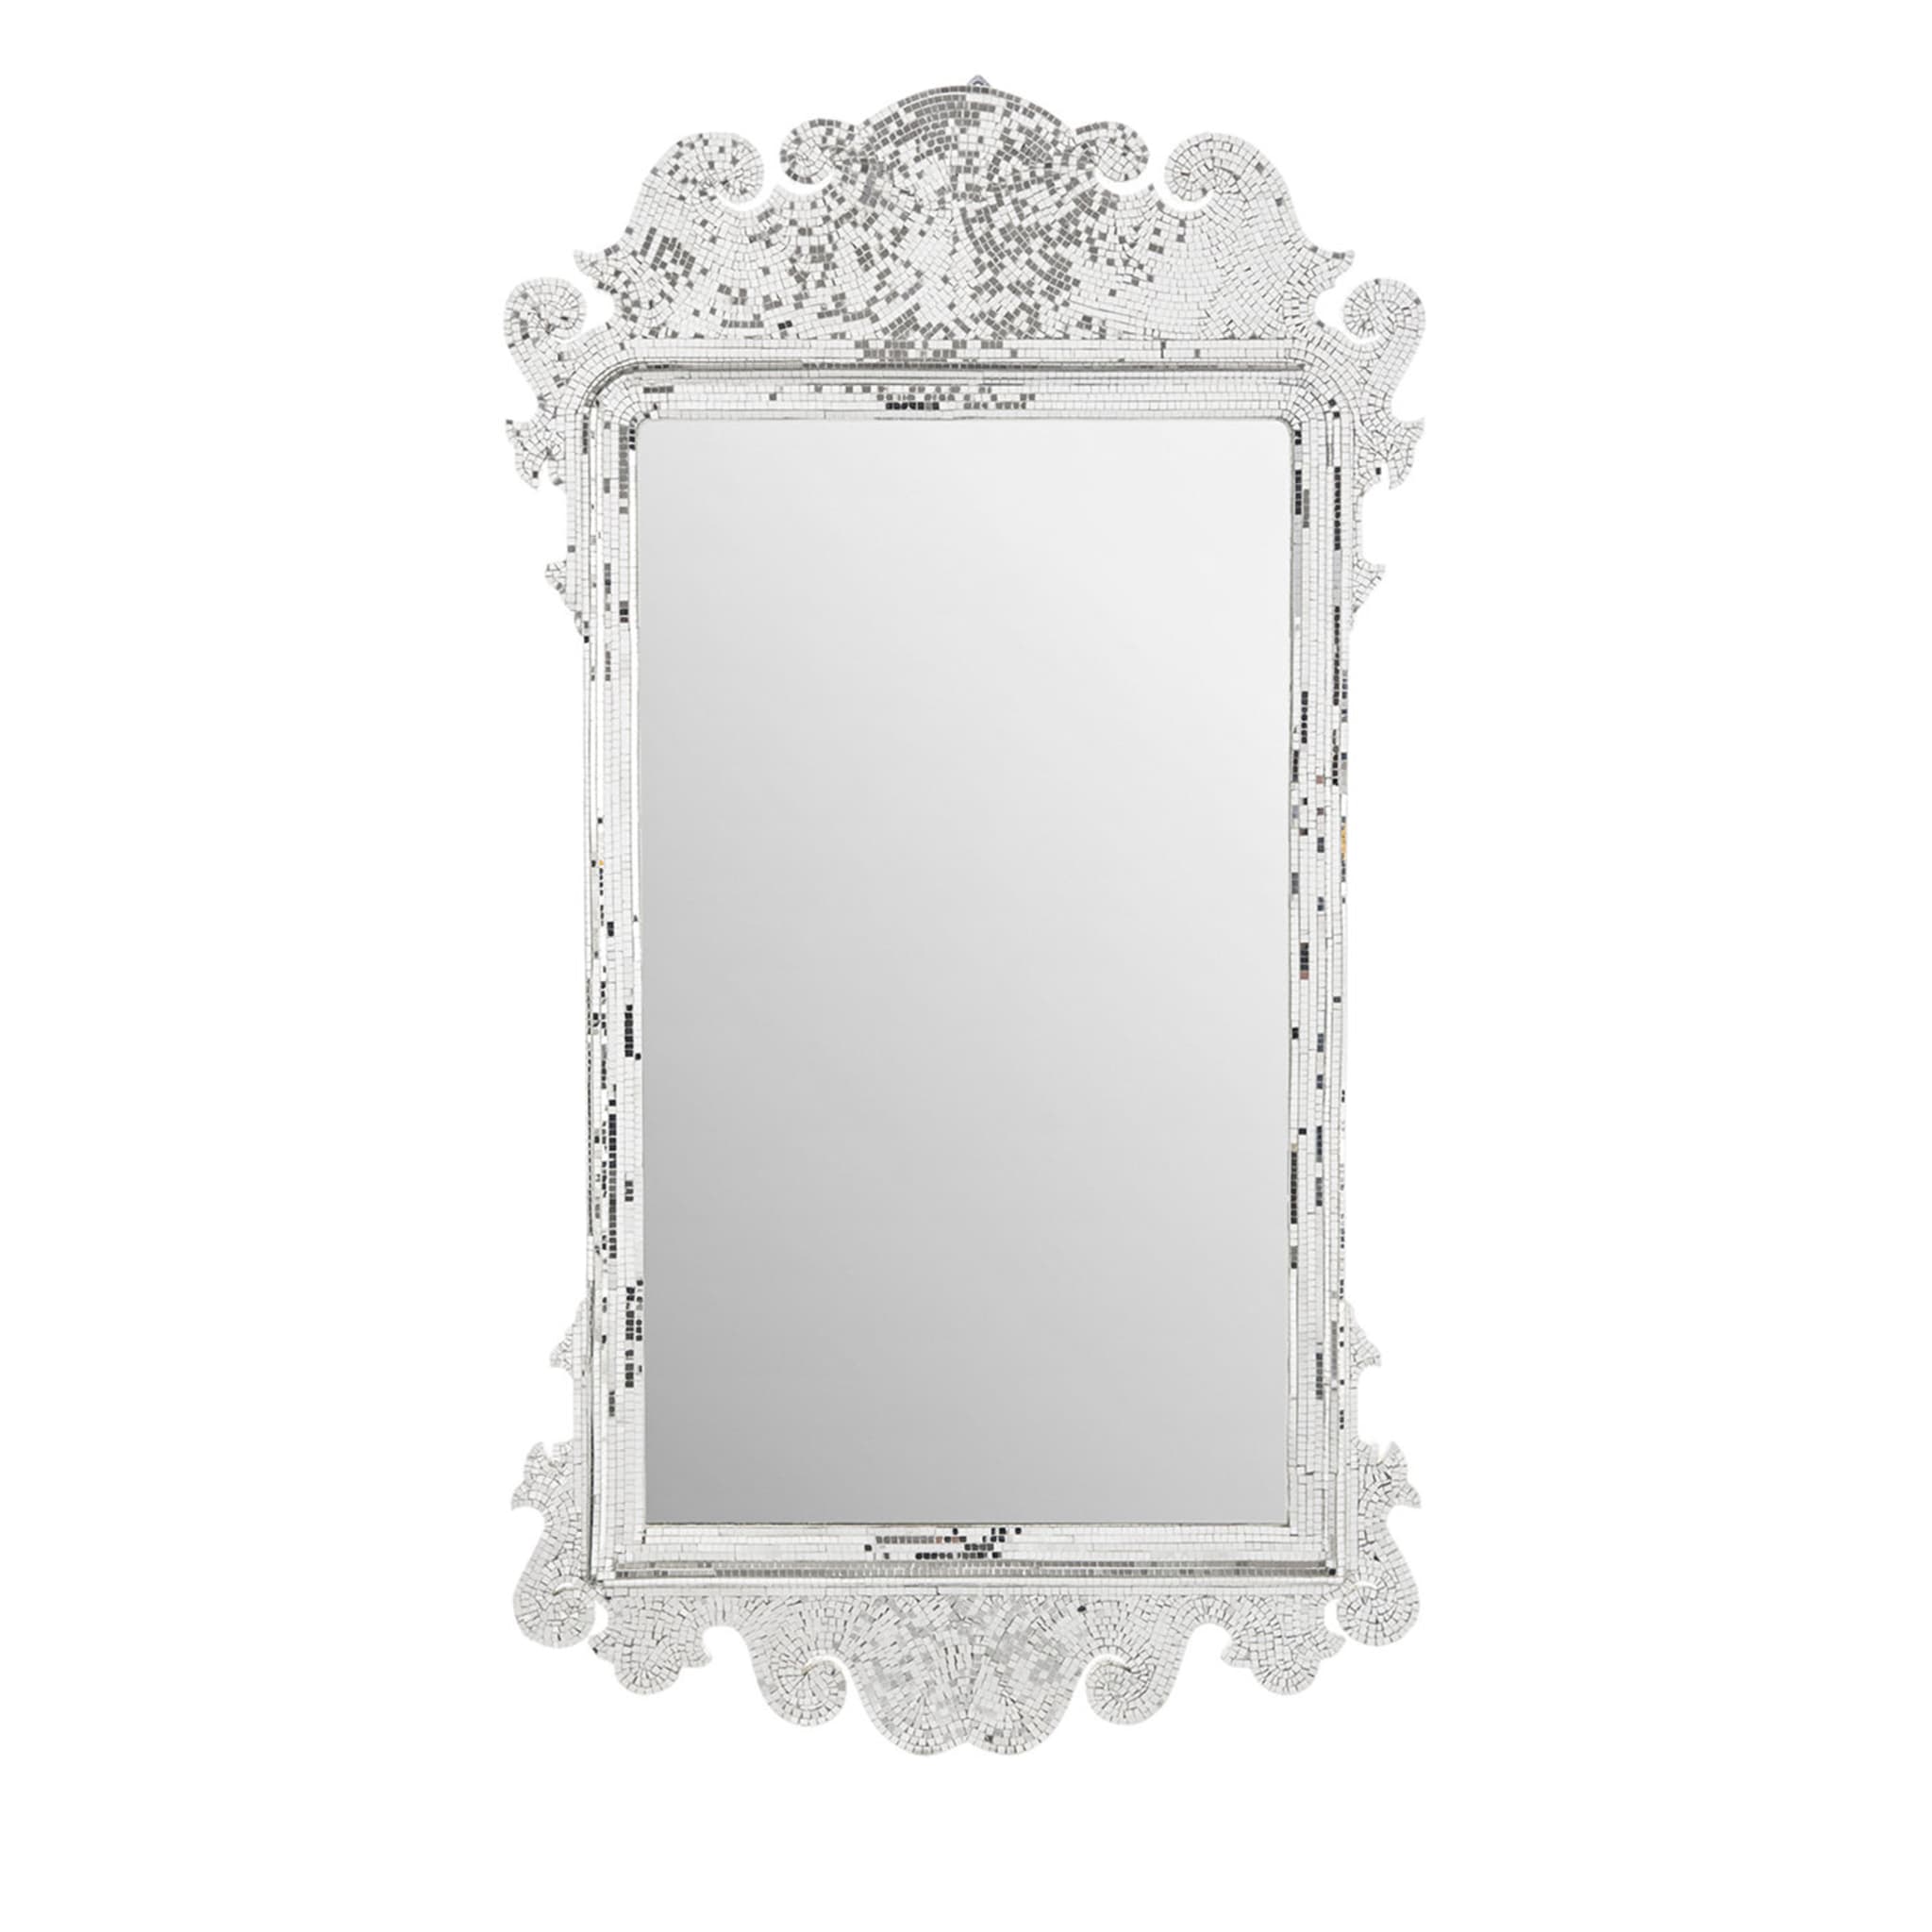 Specchio barocco